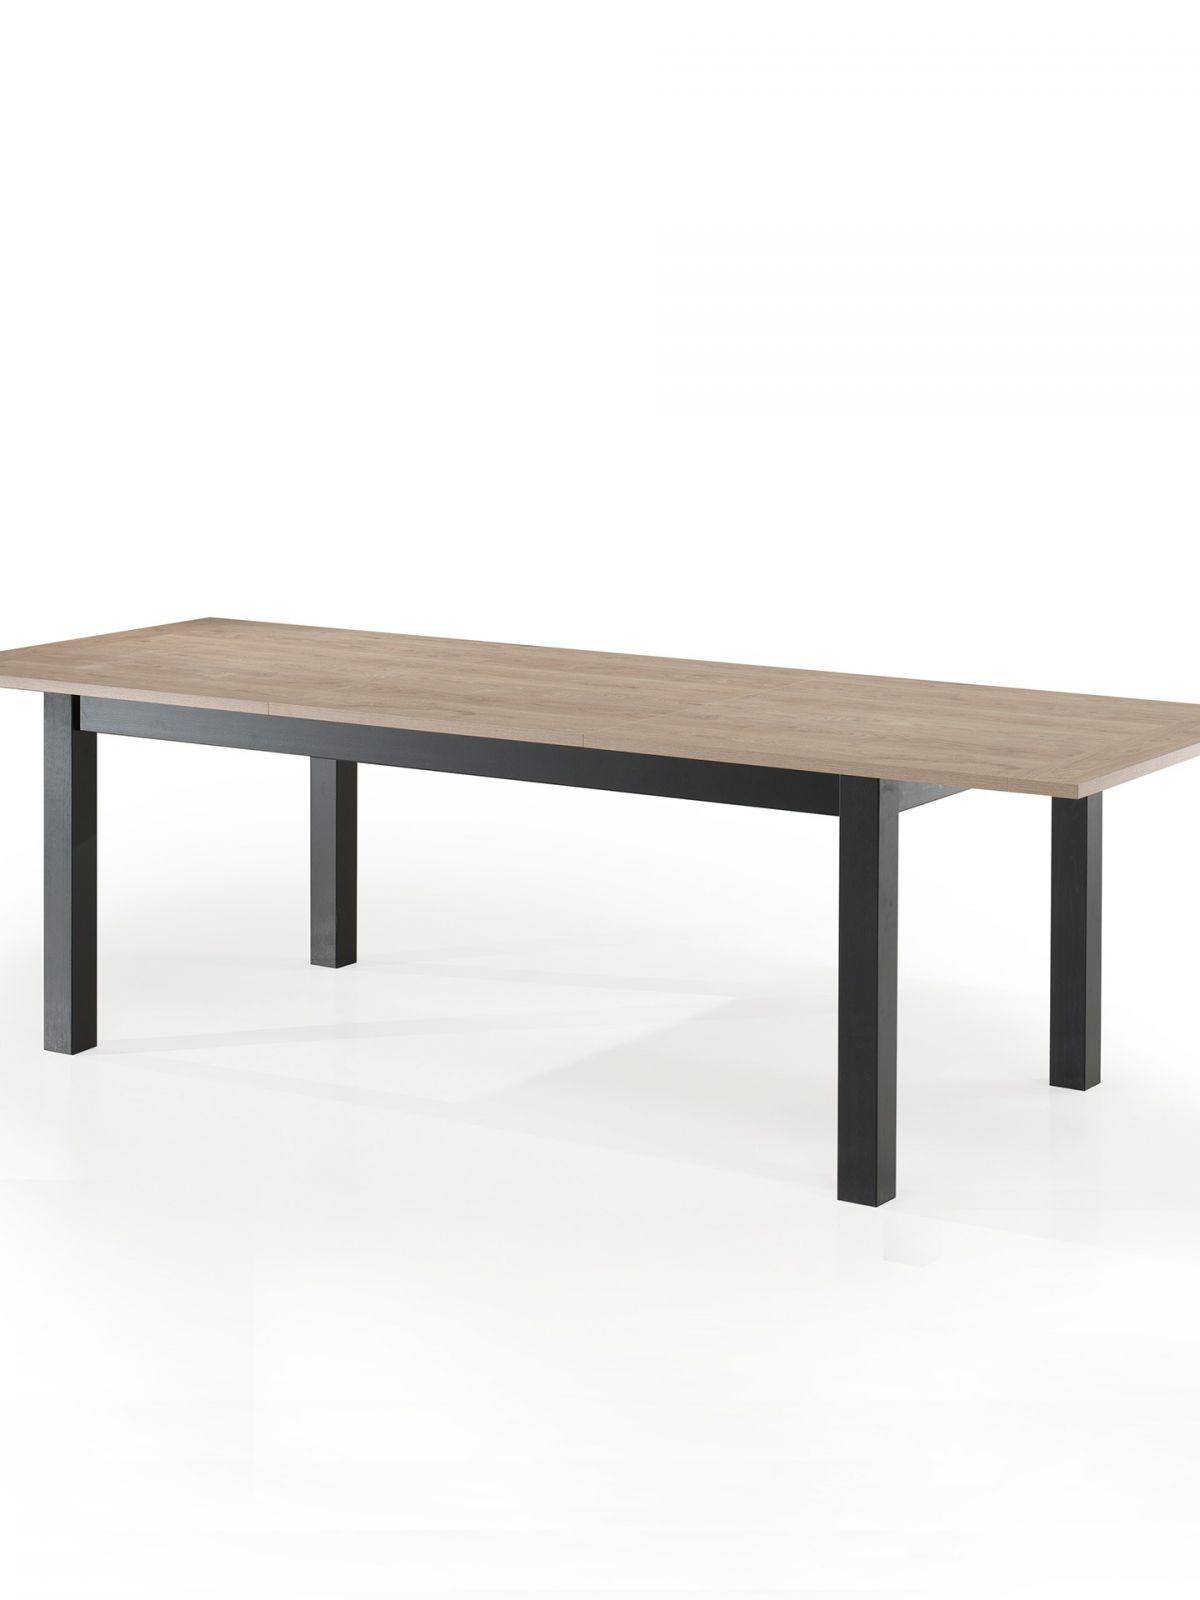 Table avec allonge rectangulaire 1,60m - 4 pieds